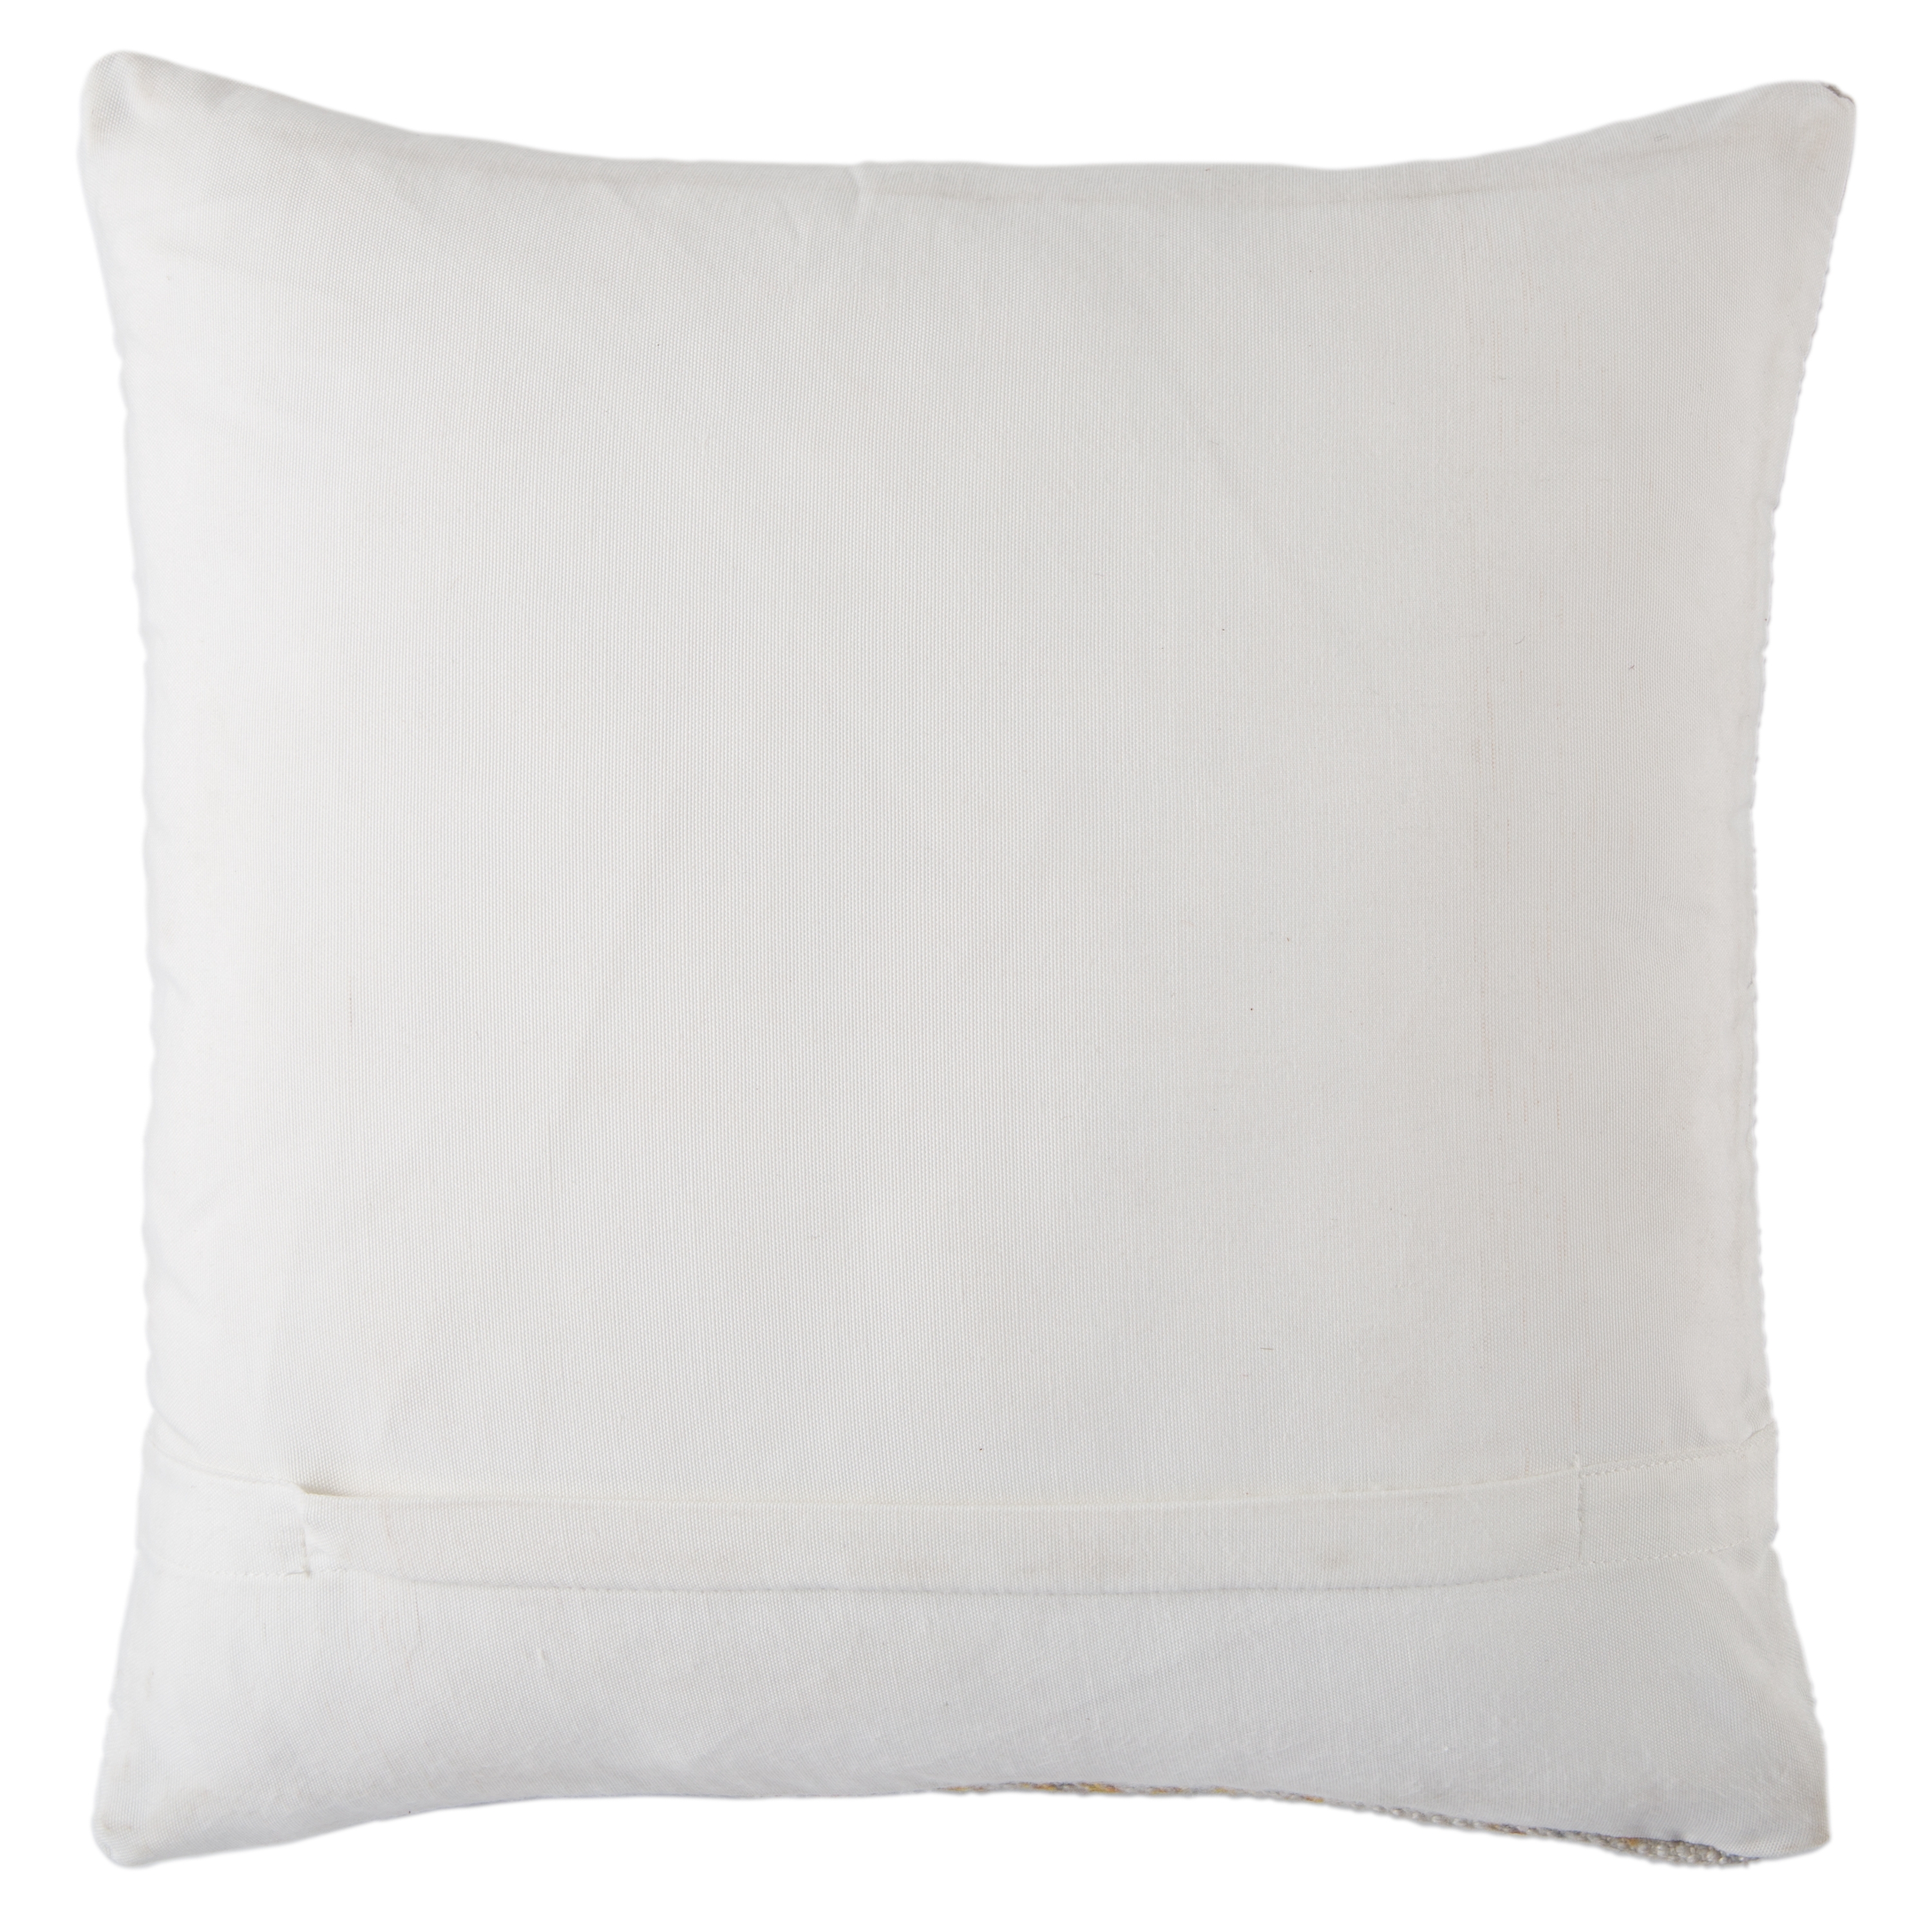 Design (US) Blue 18"X18" Pillow I-O - Image 1